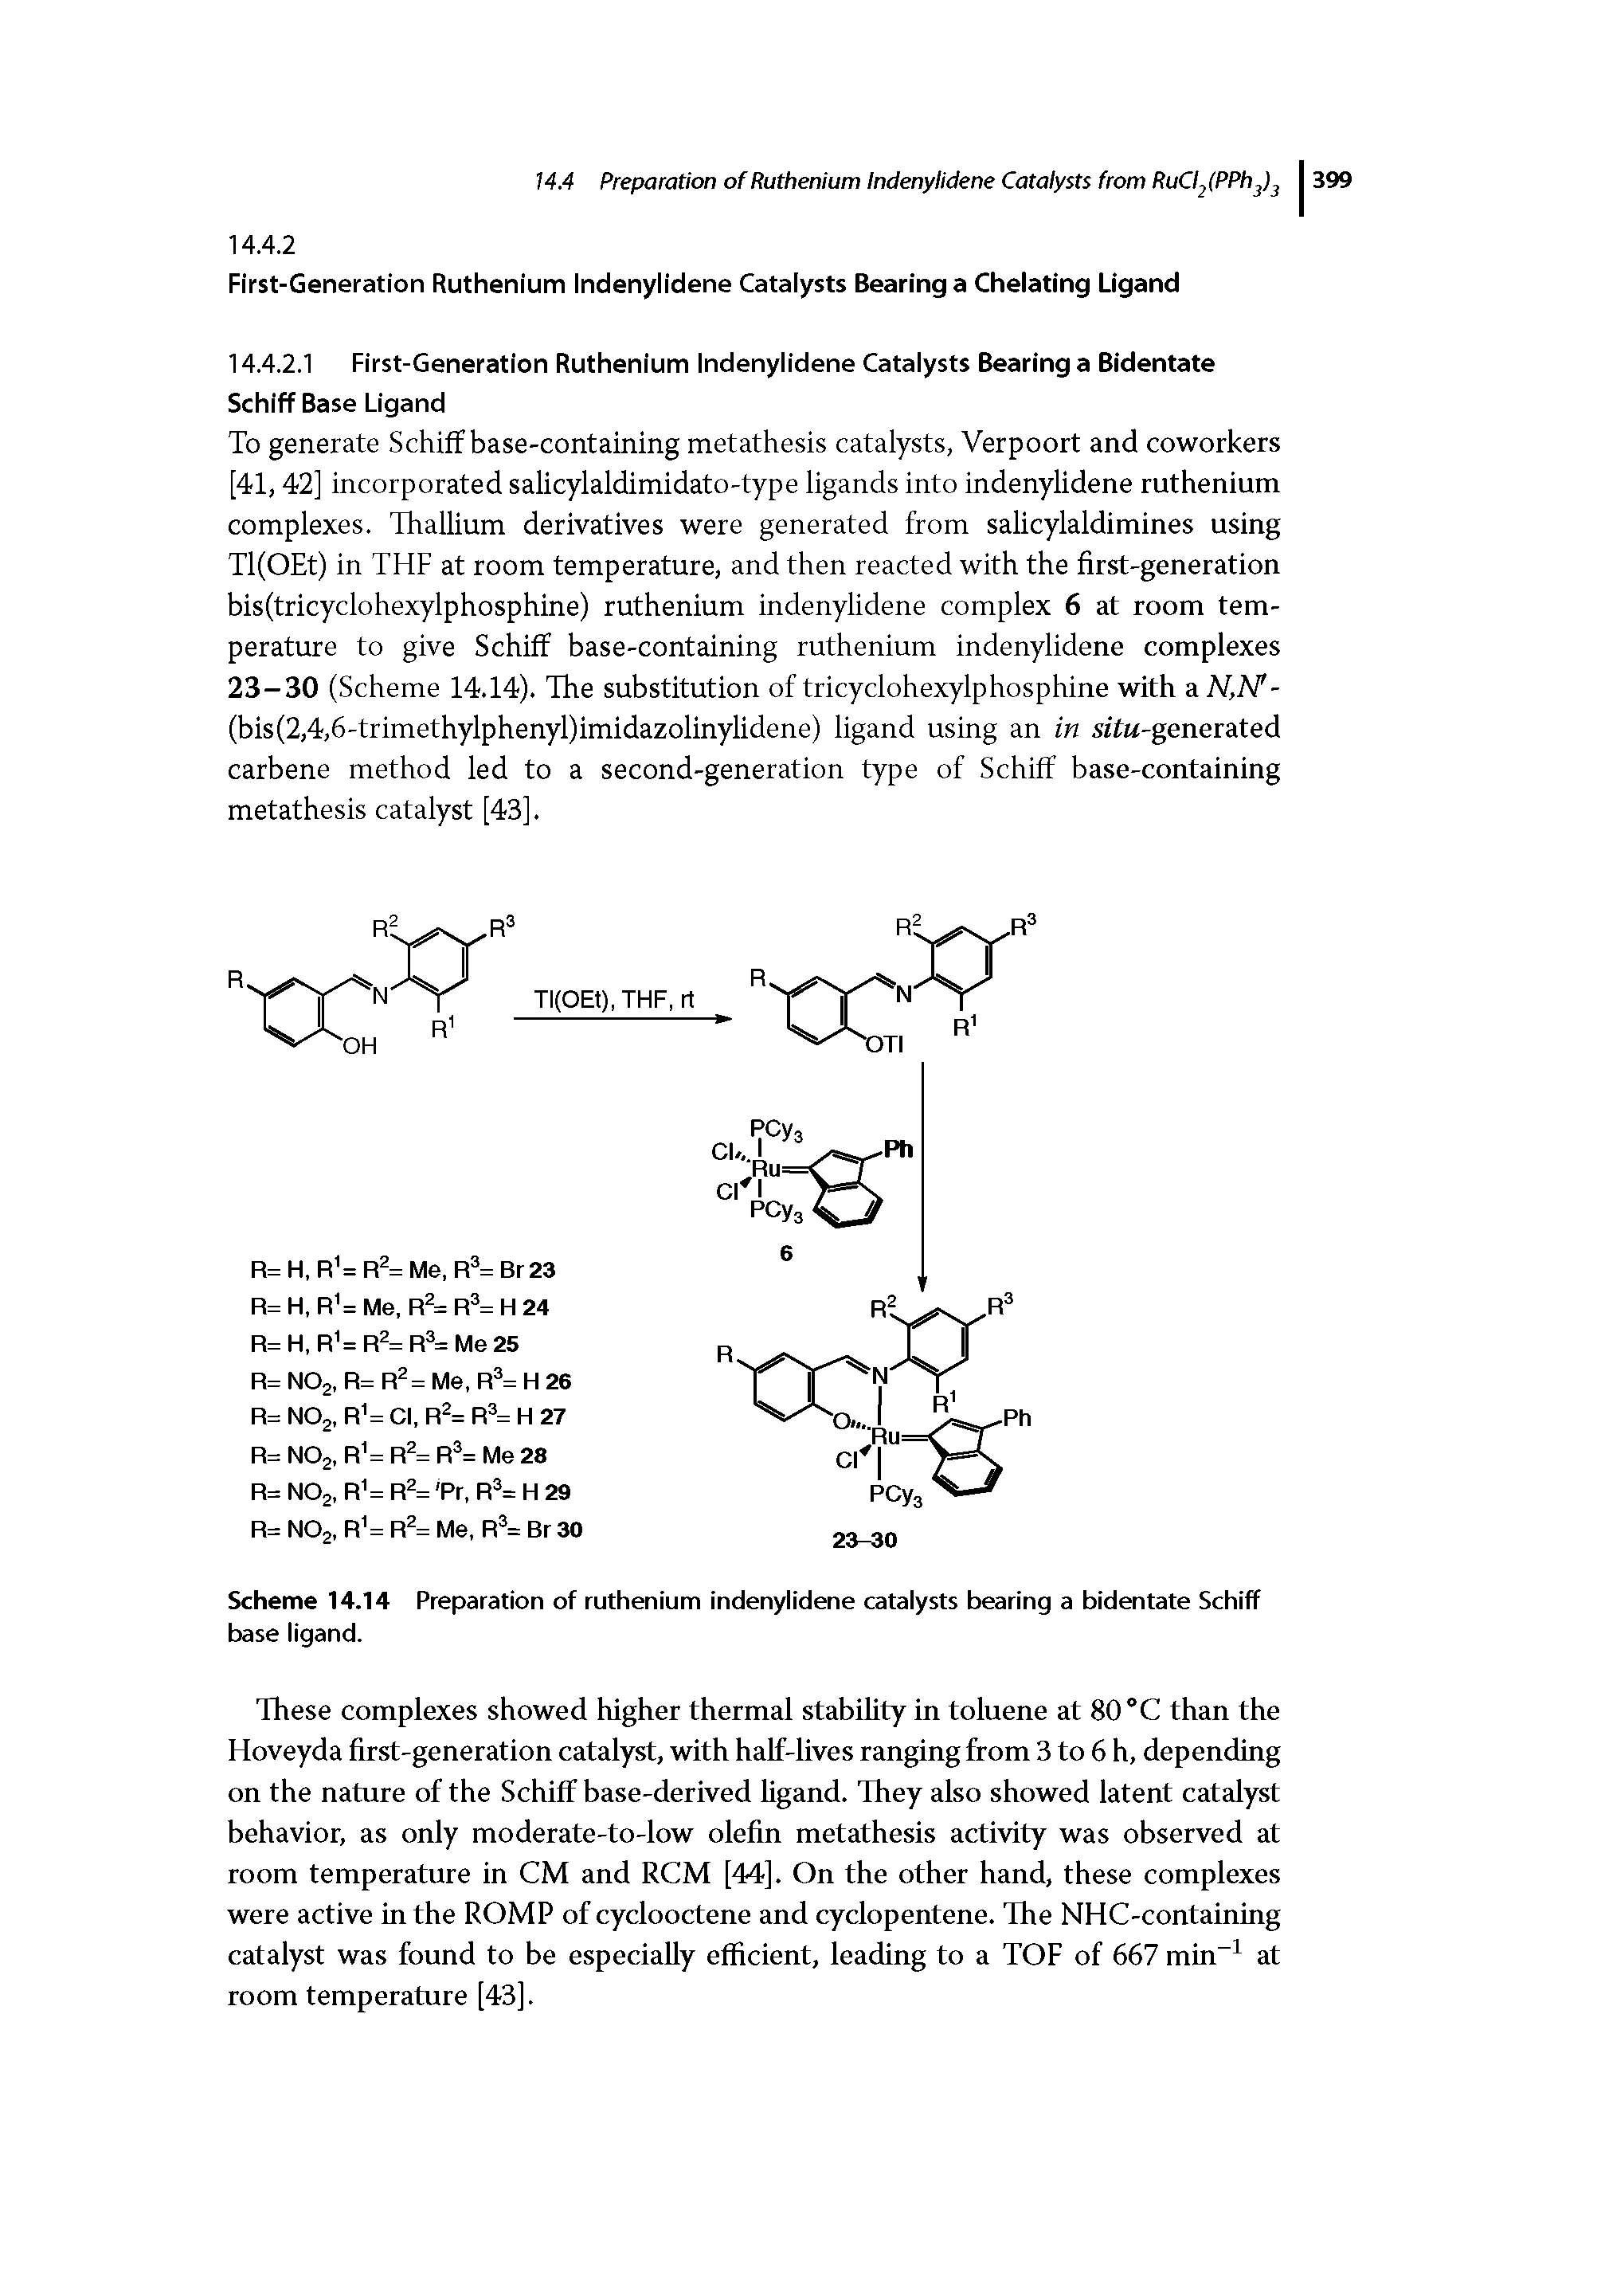 Scheme 14.14 Preparation of ruthenium indenylidene catalysts bearing a bidentate Schiff base ligand.